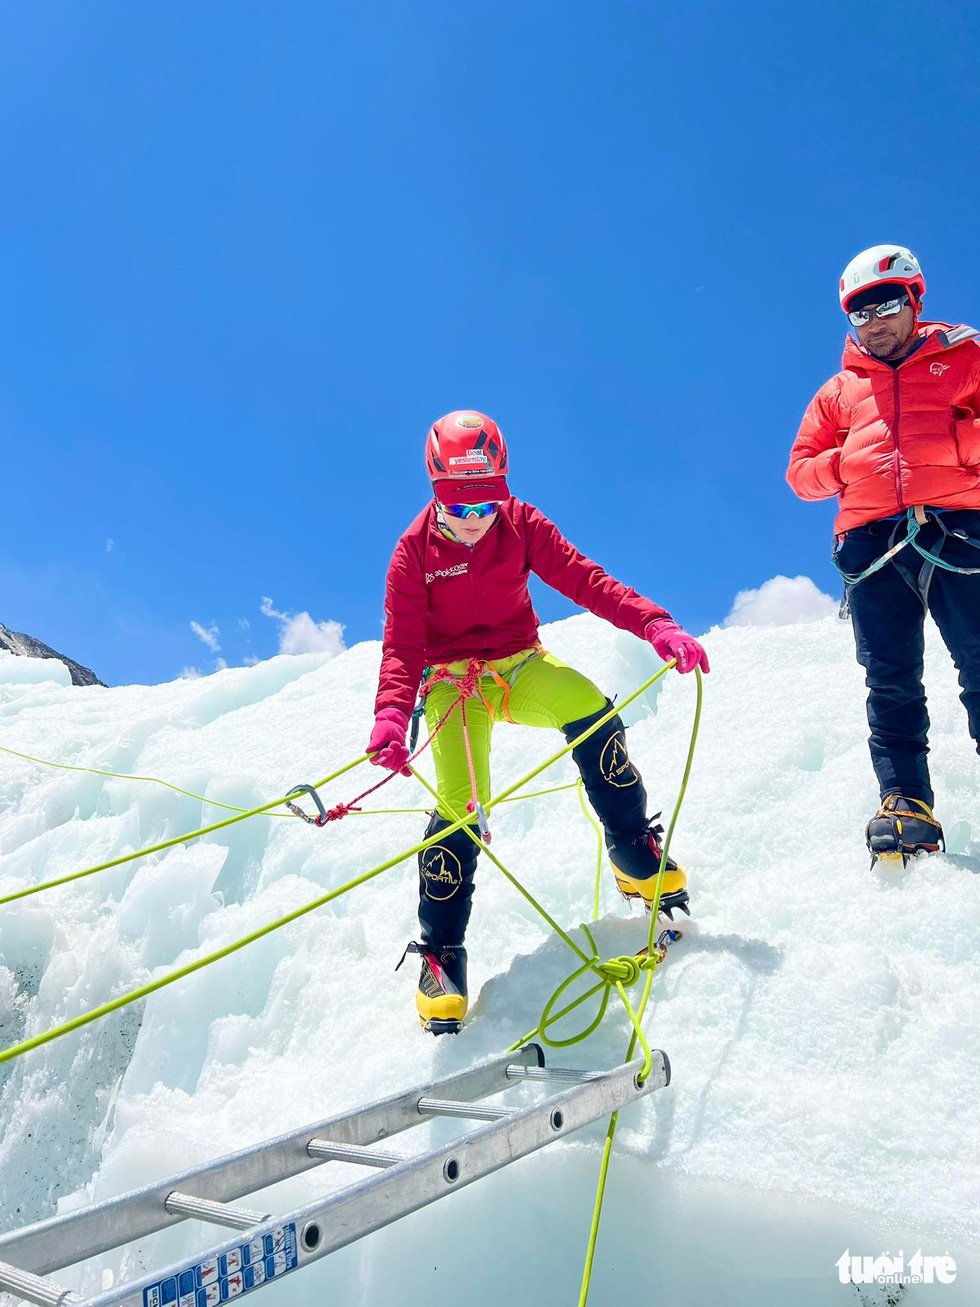 Cô gái Việt Nam chinh phục nóc nhà thế giới: Tôi hạnh phúc khi lên đỉnh Everest - Ảnh 2.